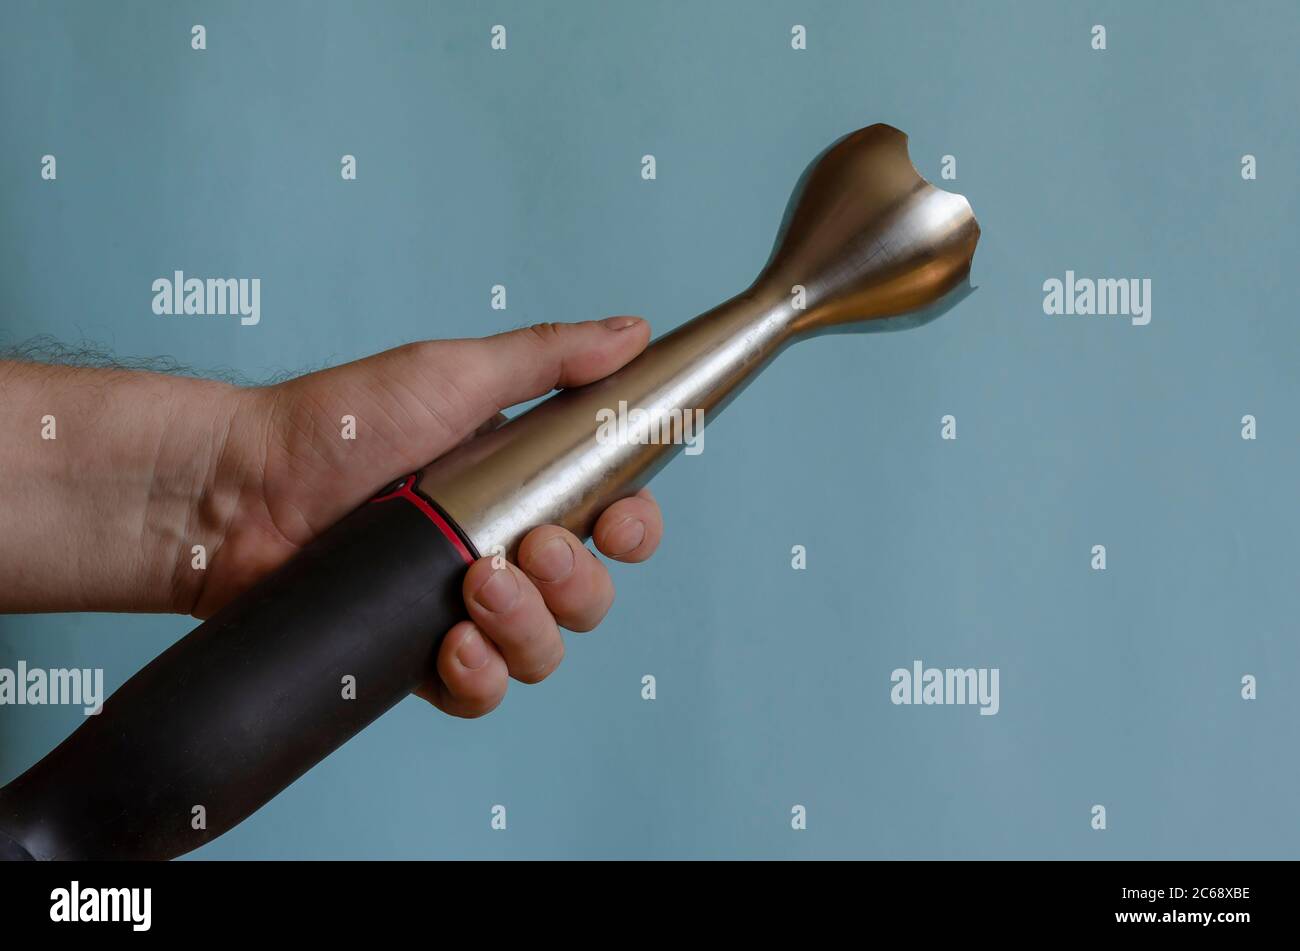 Hand hält eine Küchenarmatur mit einer Düse. Linke Hand eines Mannes mit  einem elektrischen Küchenhäcksler. Kaukasischer Mann 43-45 Jahre alt.  Küchengeräte Stockfotografie - Alamy